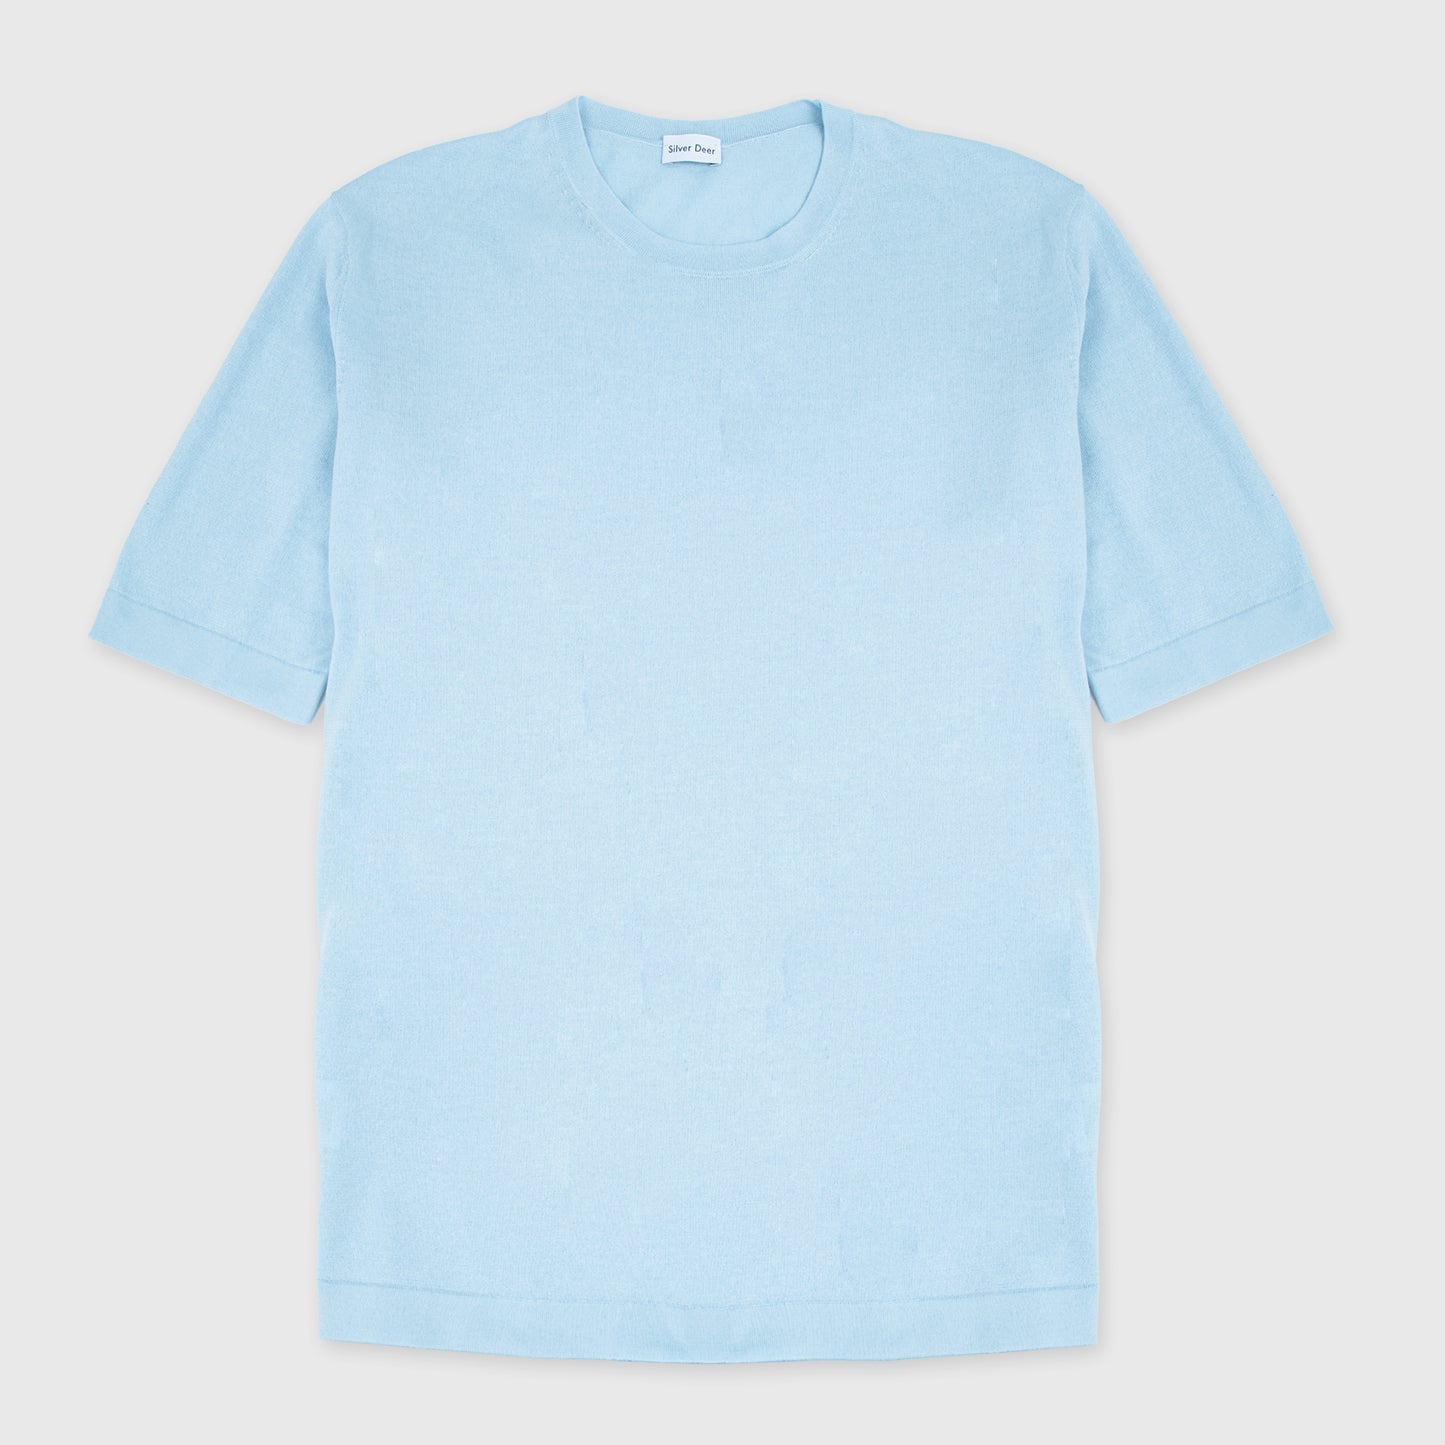 Knit Fine Gauge T-Shirt Light Blue